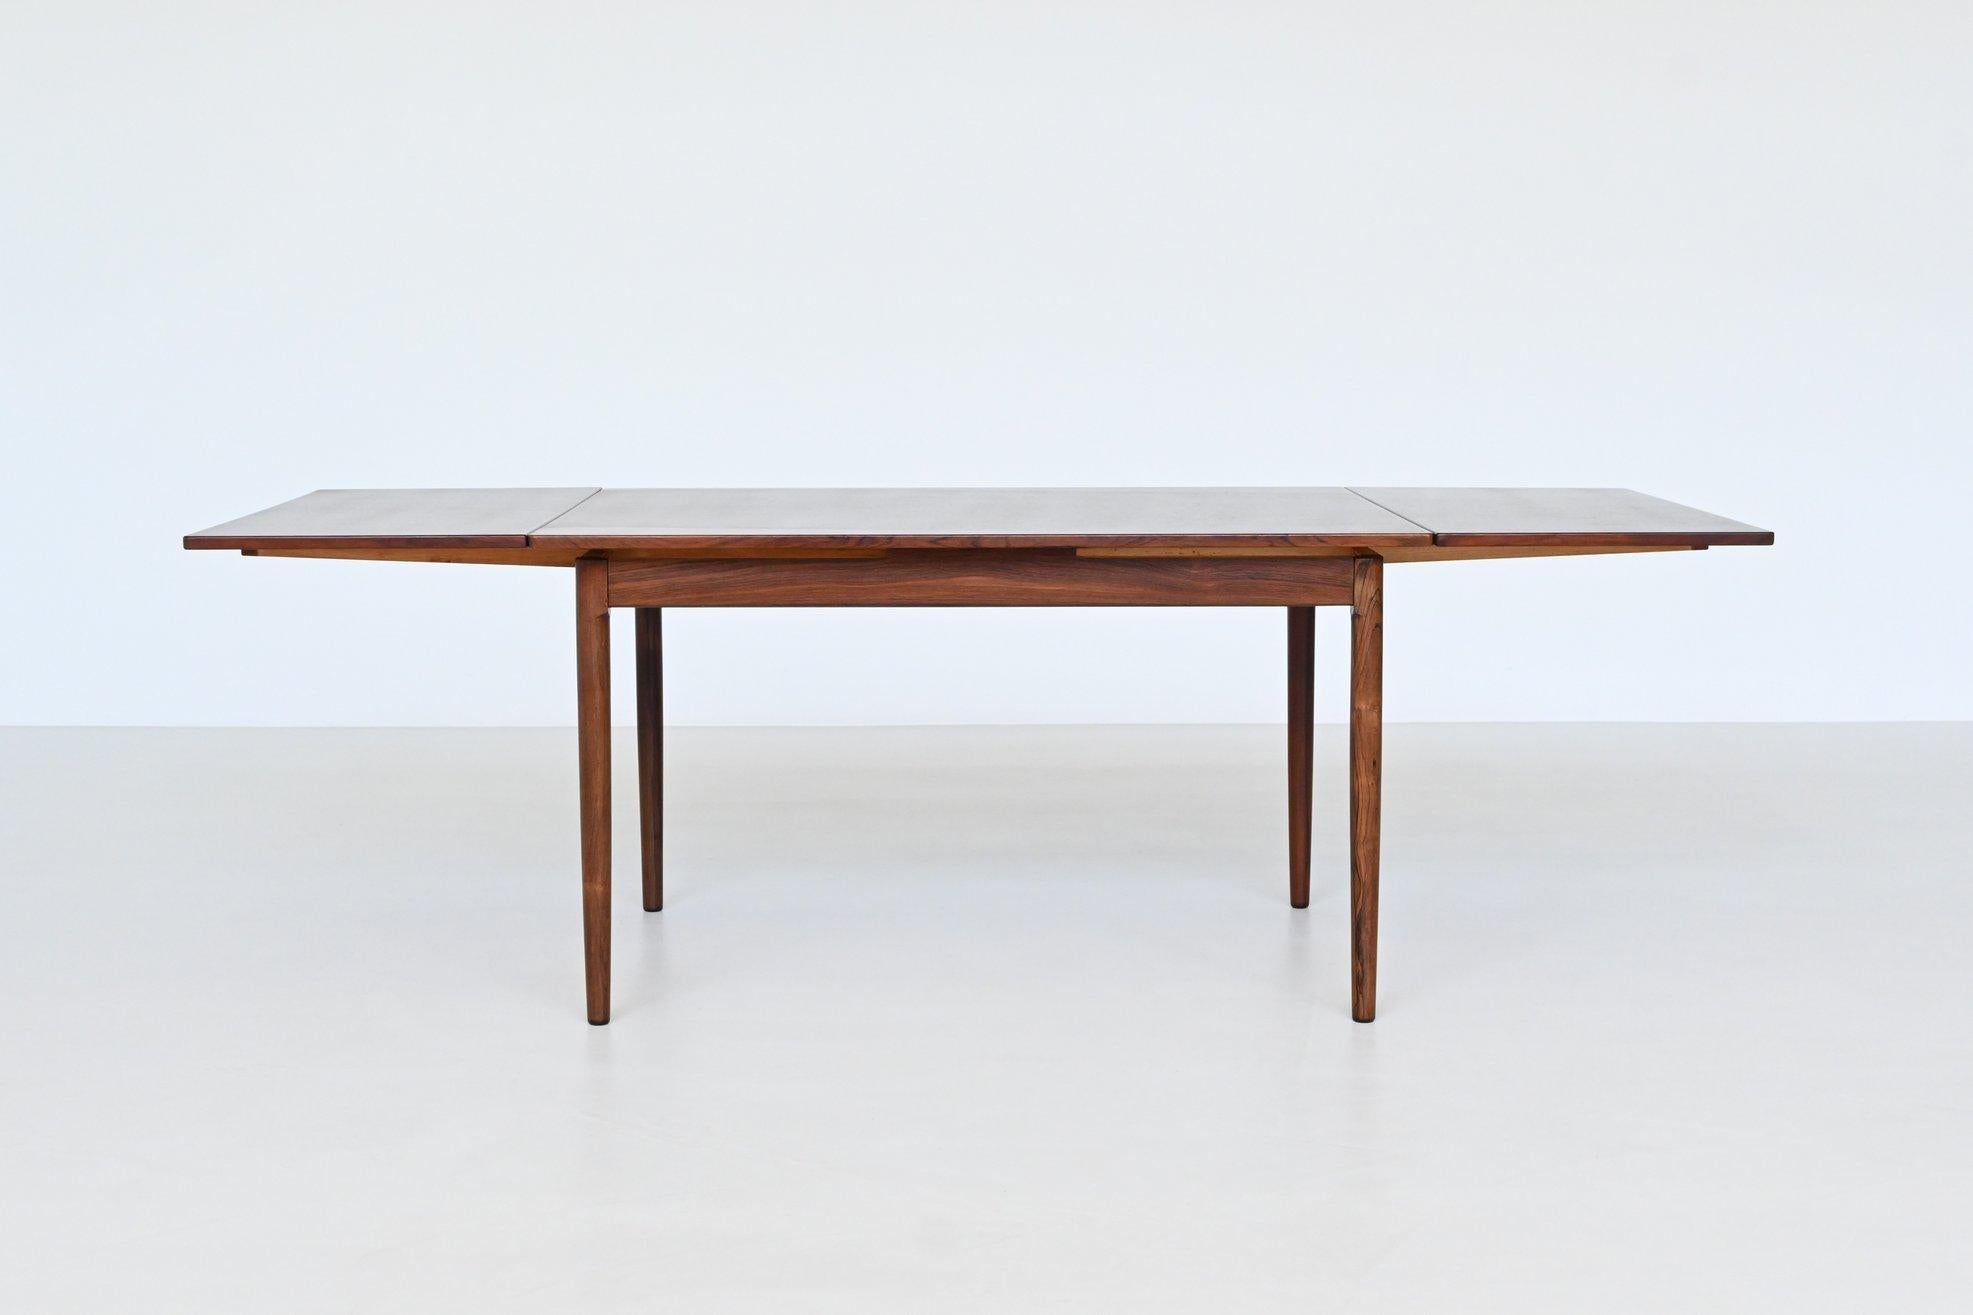 Schöner ovaler, ausziehbarer Esstisch, entworfen und hergestellt von Randers Mobelfabrik, Dänemark 1960. Dieser gut verarbeitete Tisch ist aus schön gemasertem und warmem Palisanderholz gefertigt. Die konisch zulaufenden Beine sind aus massivem